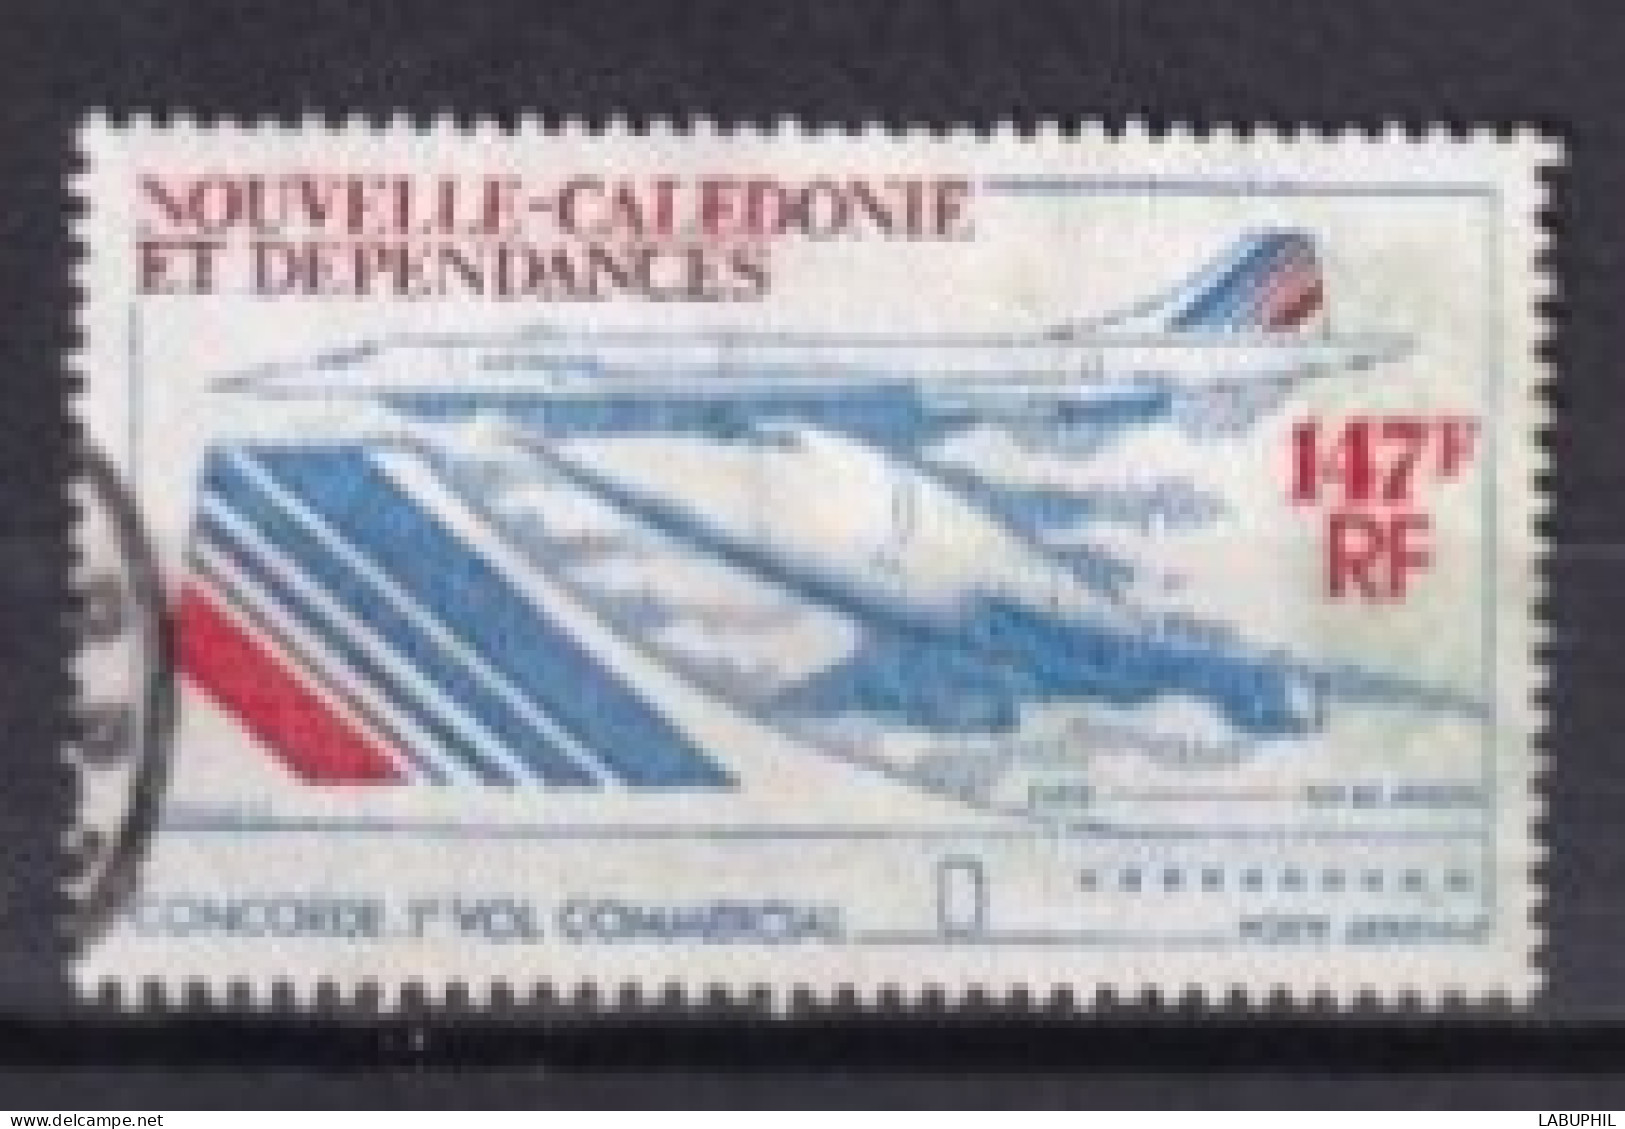 NOUVELLE CALEDONIE Dispersion D'une Collection Oblitéré Used  1977 Avion Concorde - Gebraucht